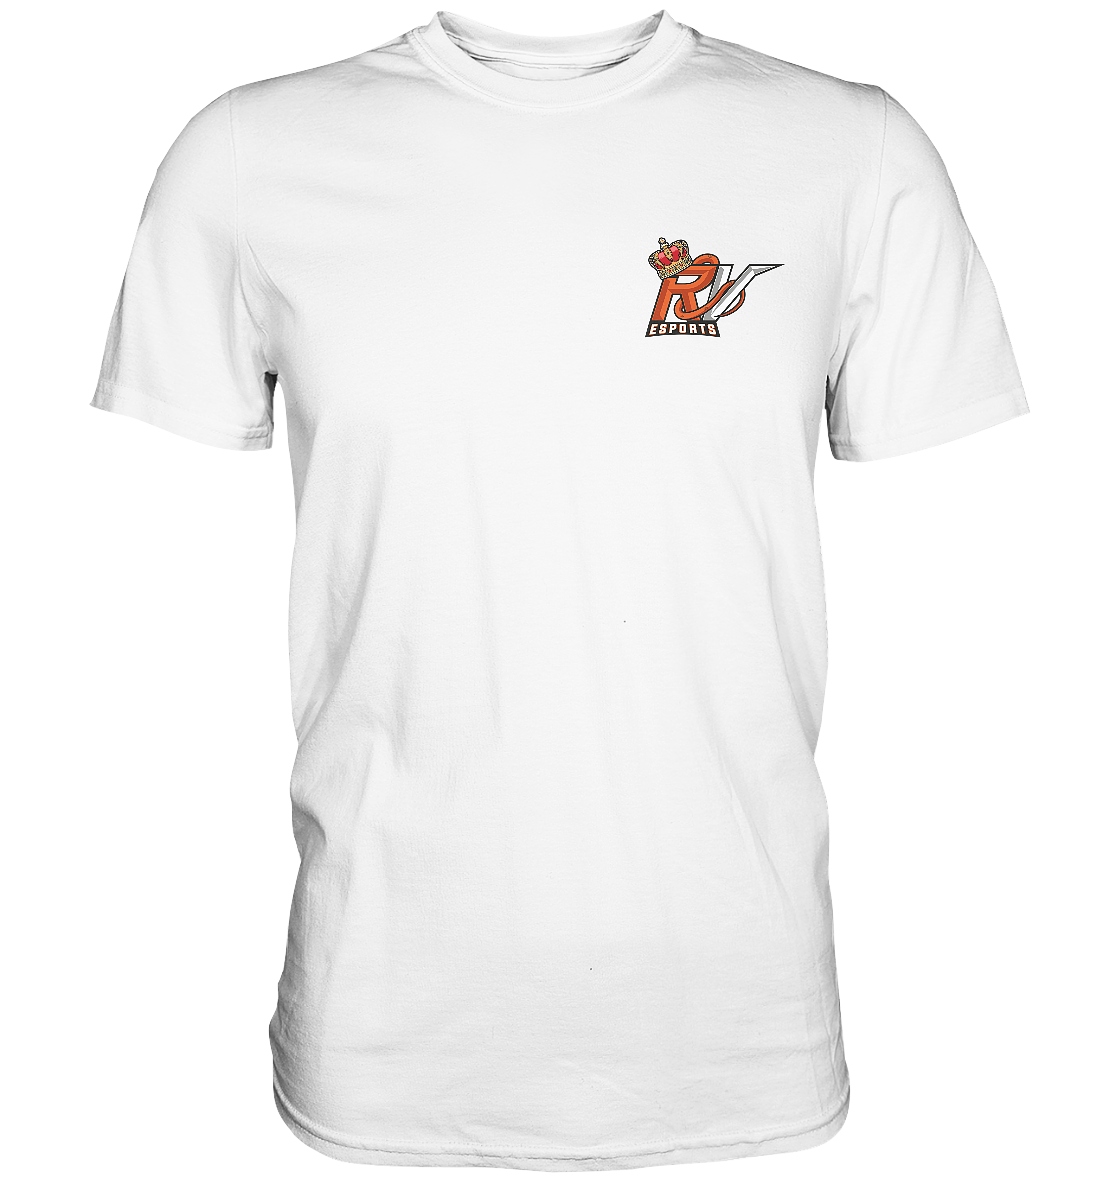 ROYAL VIPERS ESPORTS - Basic Shirt